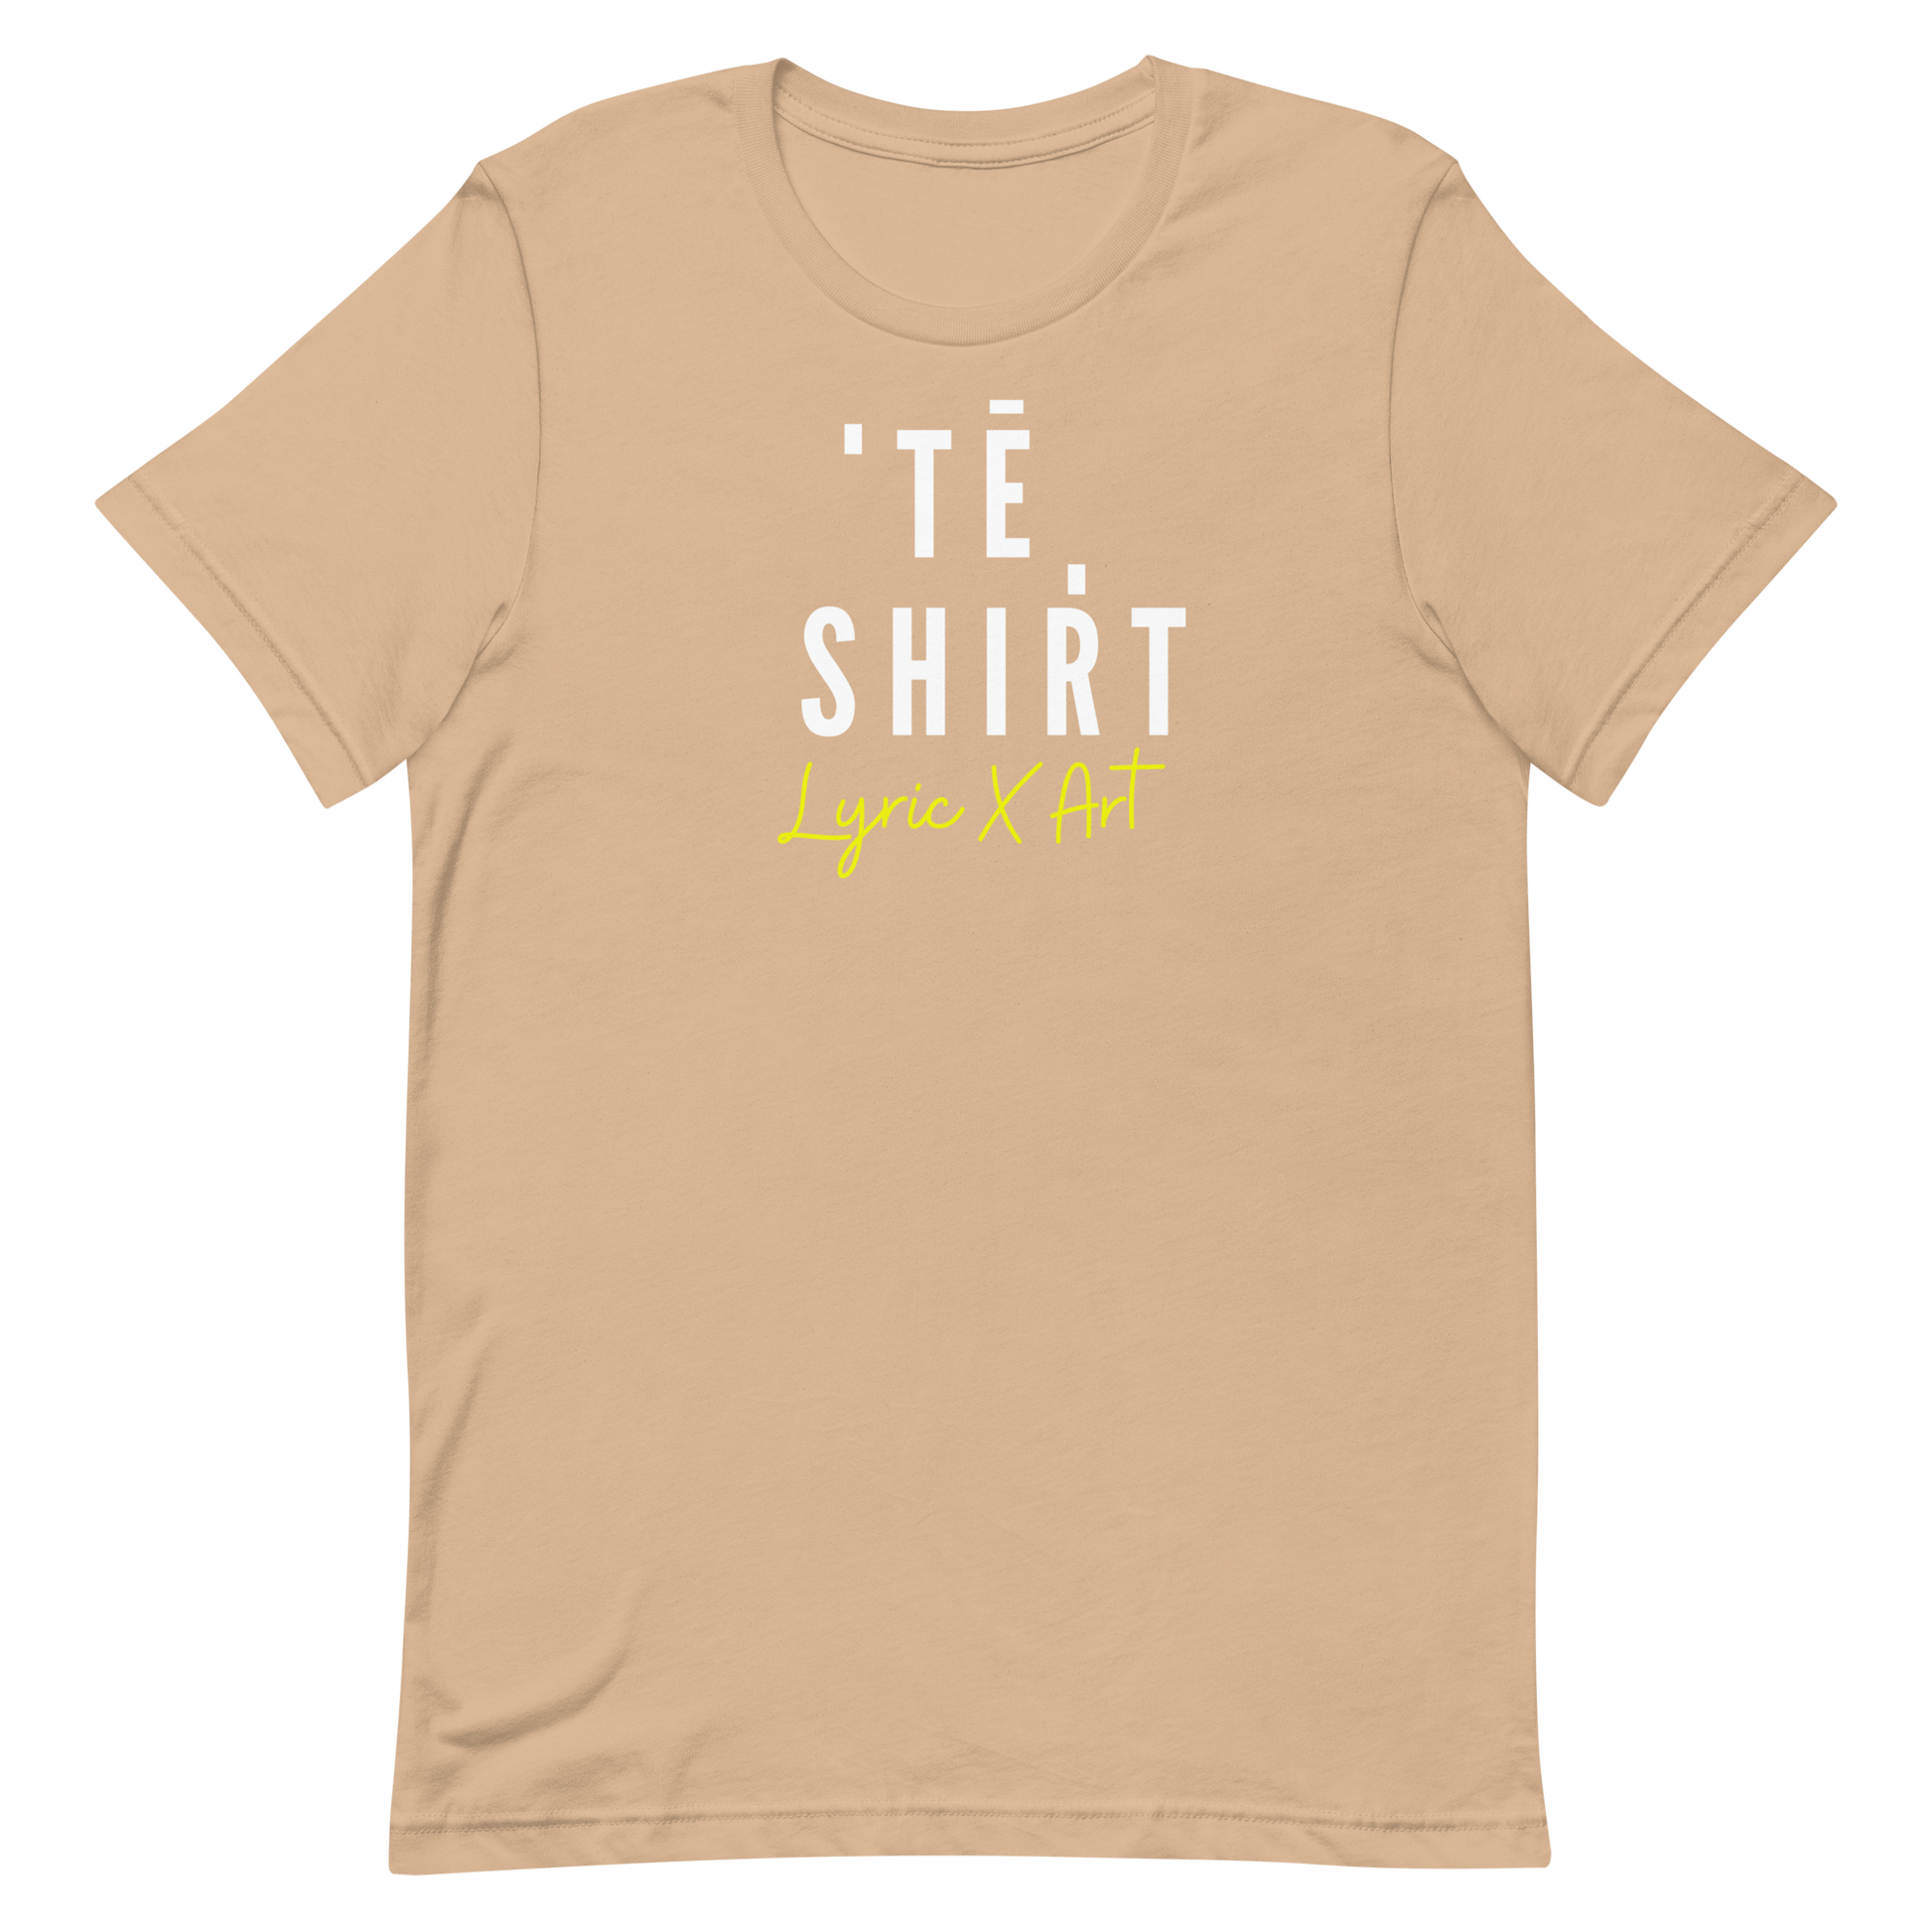 A T - Shirt - lyricxart